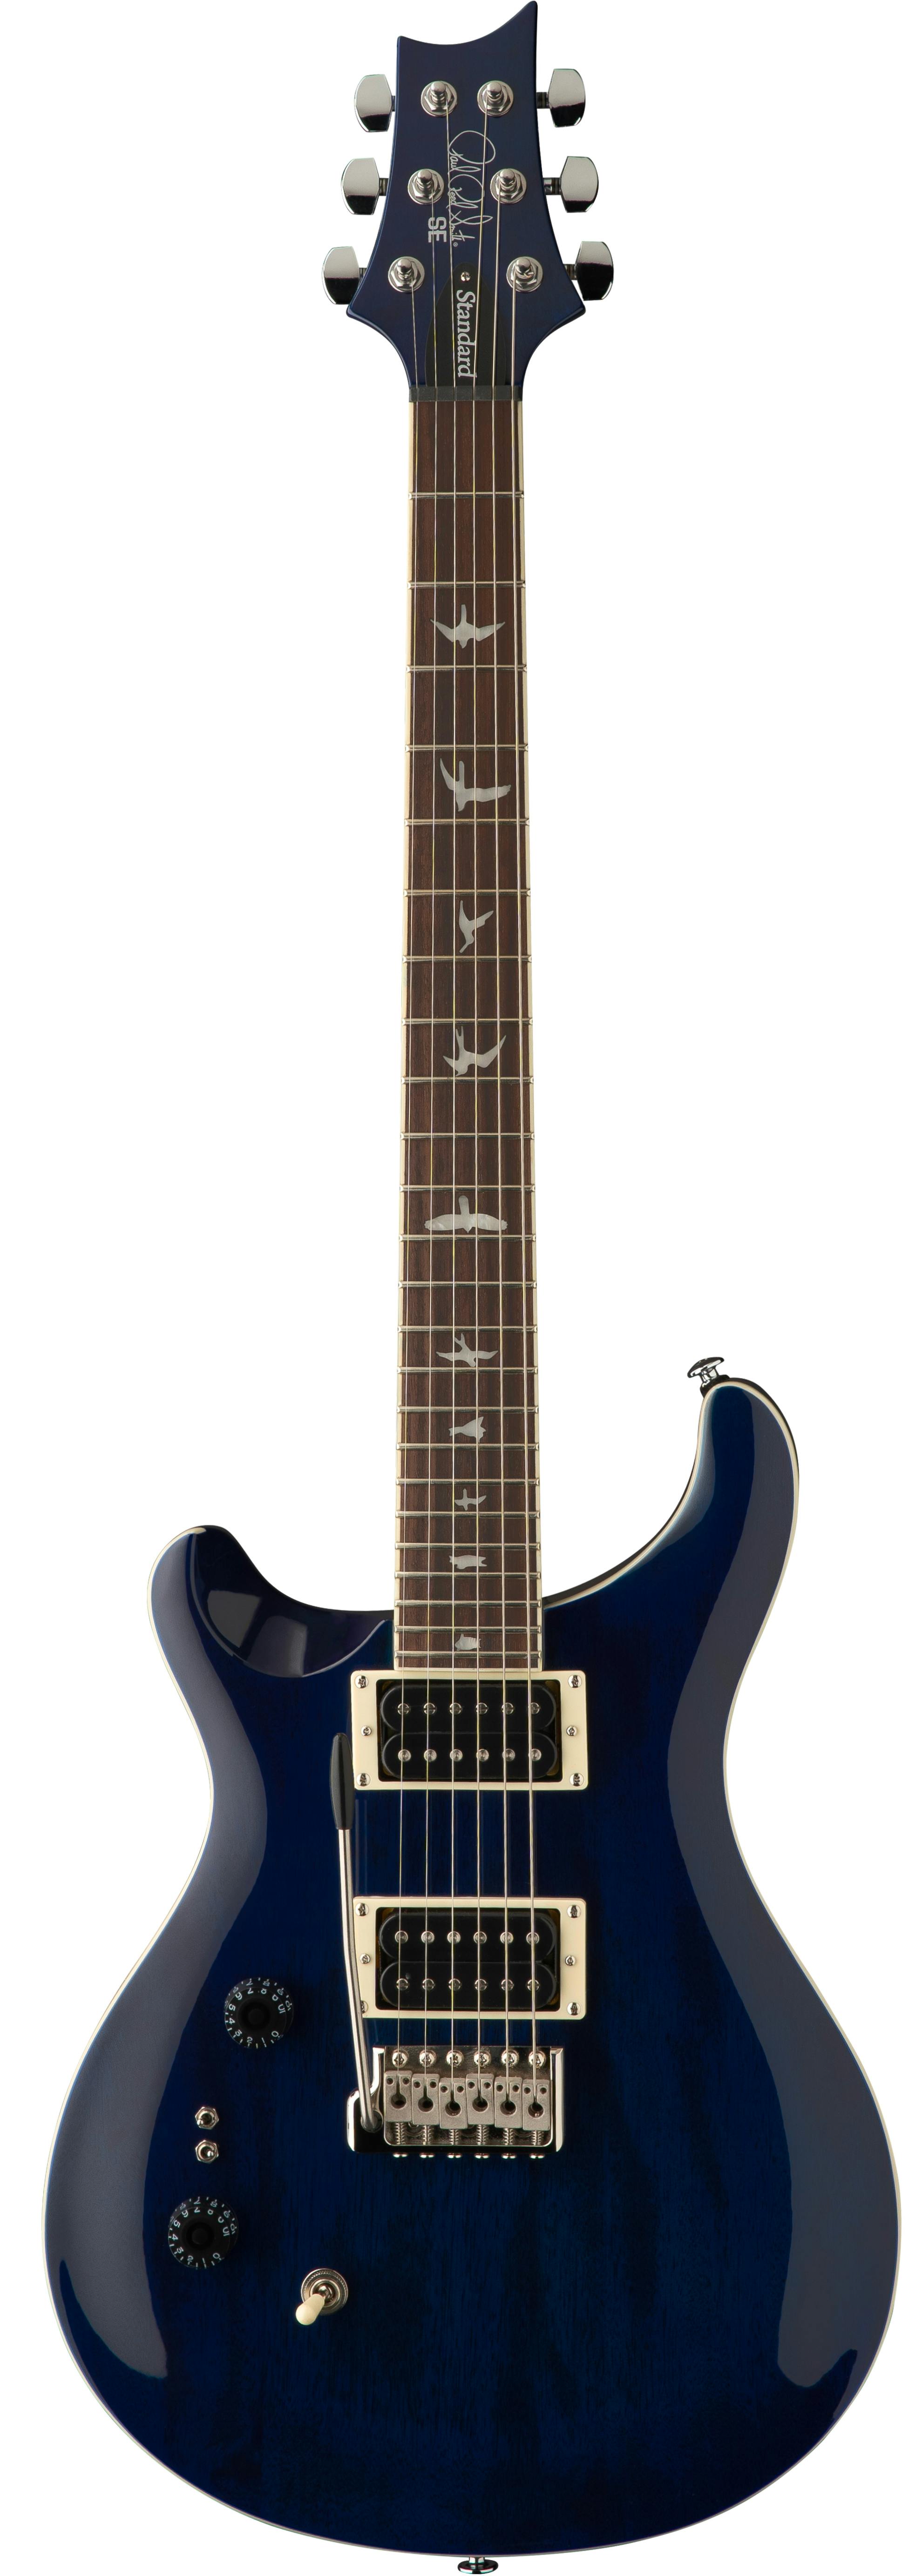 PRS SE Standard 24-08 Left-Handed Electric Guitar in Translucent